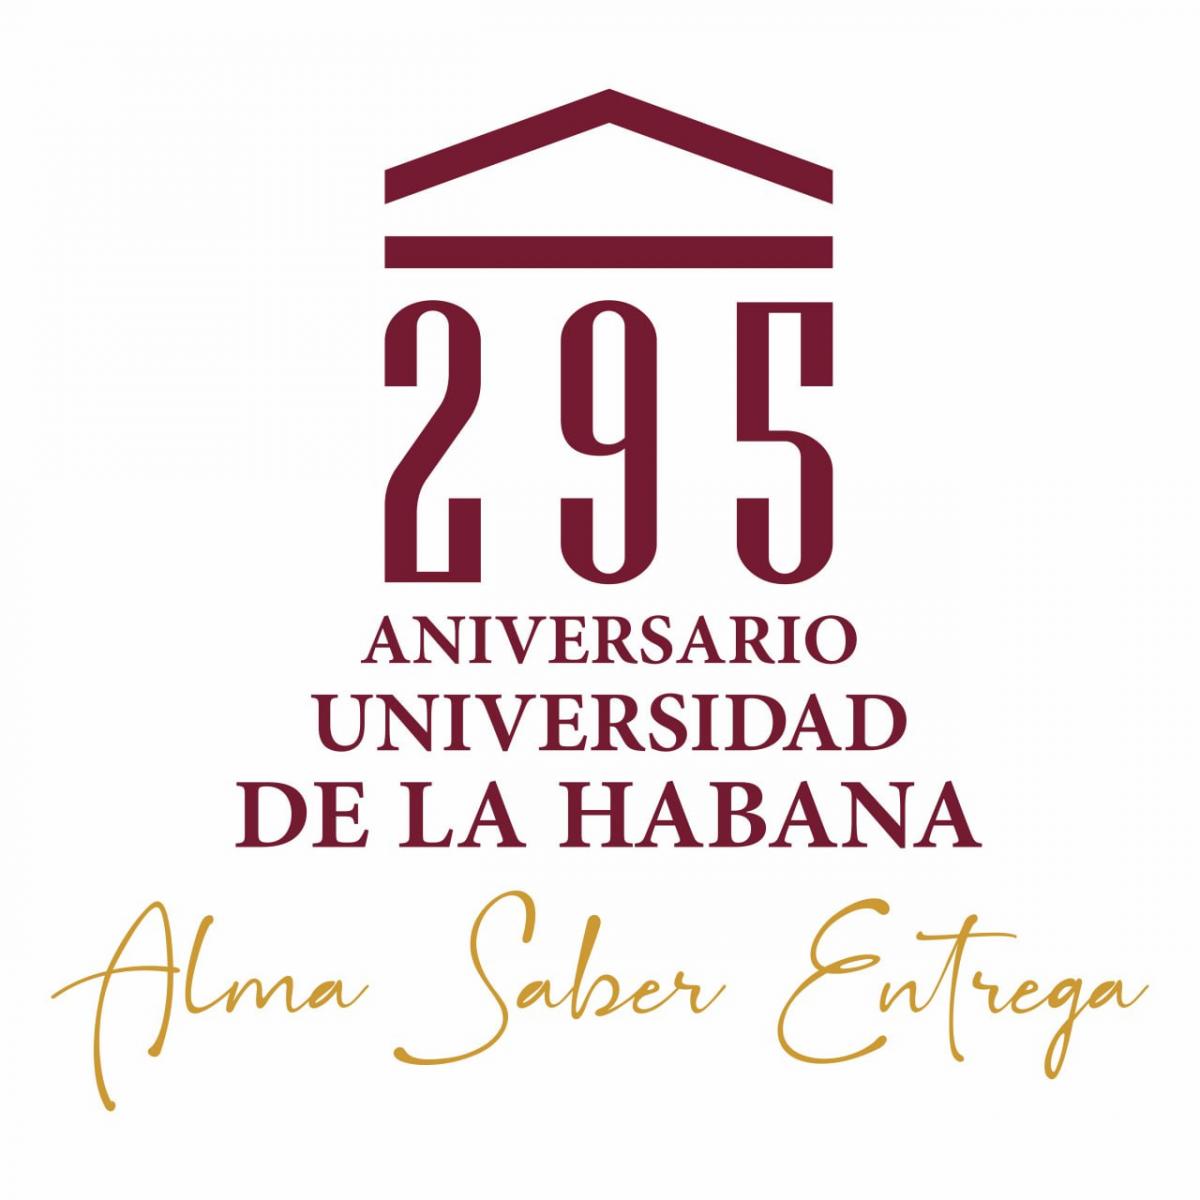 La Universidad de La Habana en su cumpleaños 295